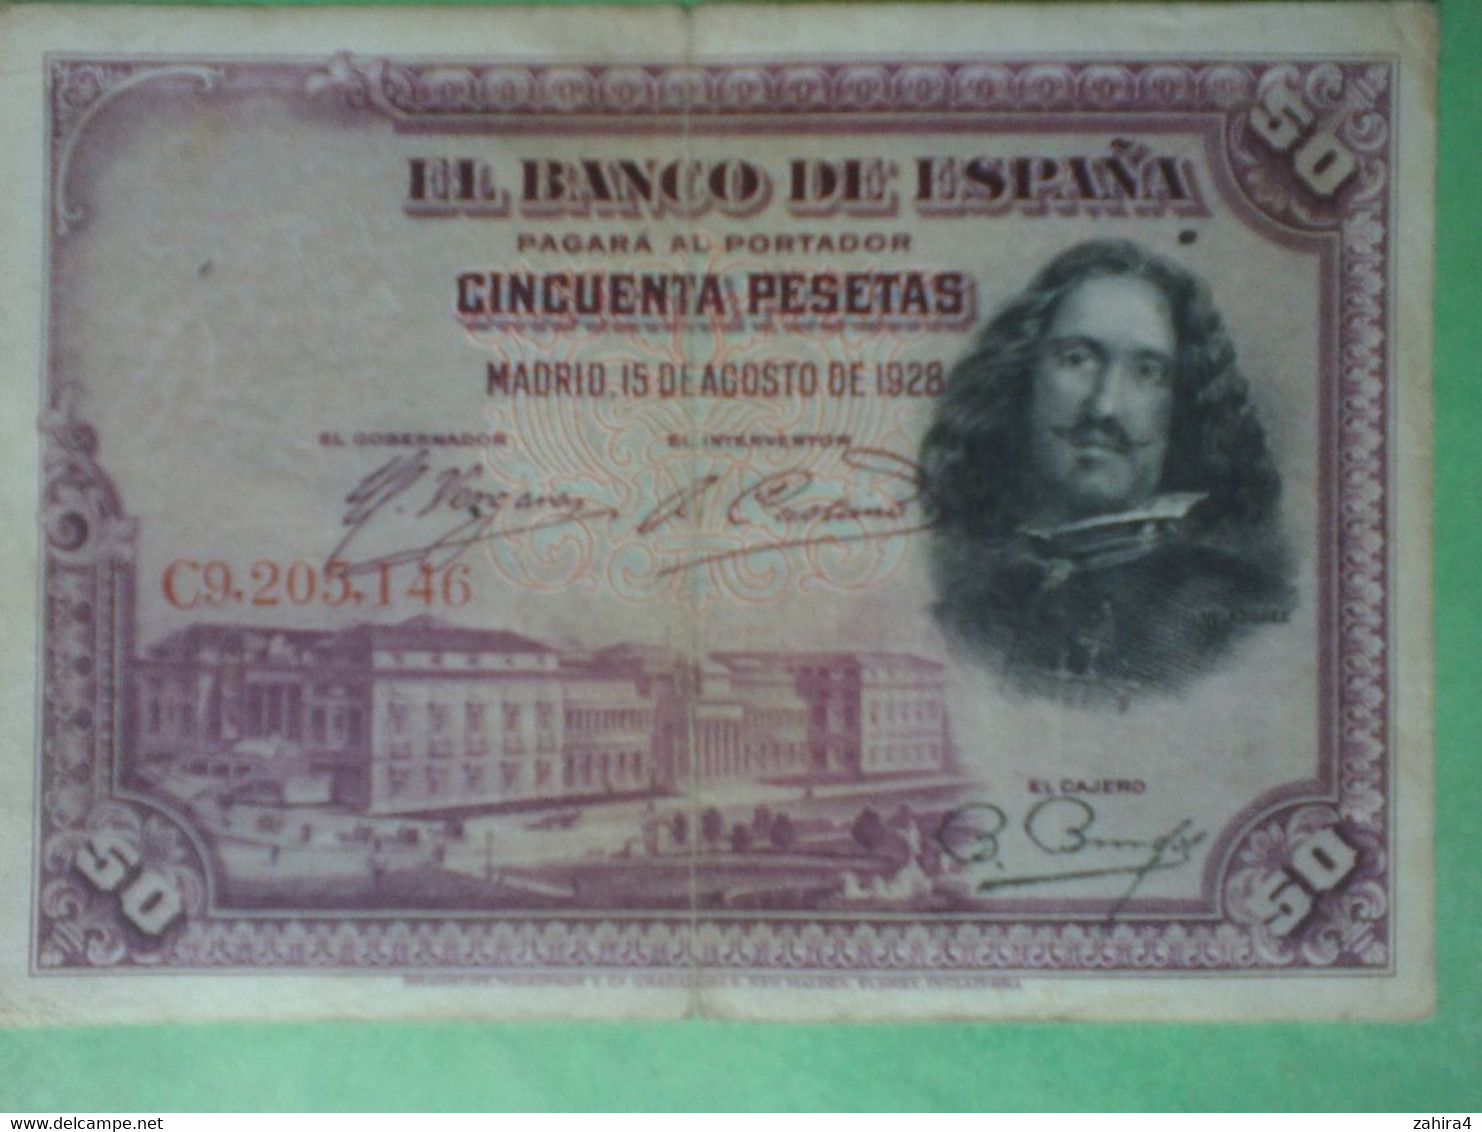 50 Pesetas El Banco De Espana Cincuenta Pesetas - C9.205,146 - Velazquez - Madrid, 15 De Agosto De 1928 - 50 Pesetas